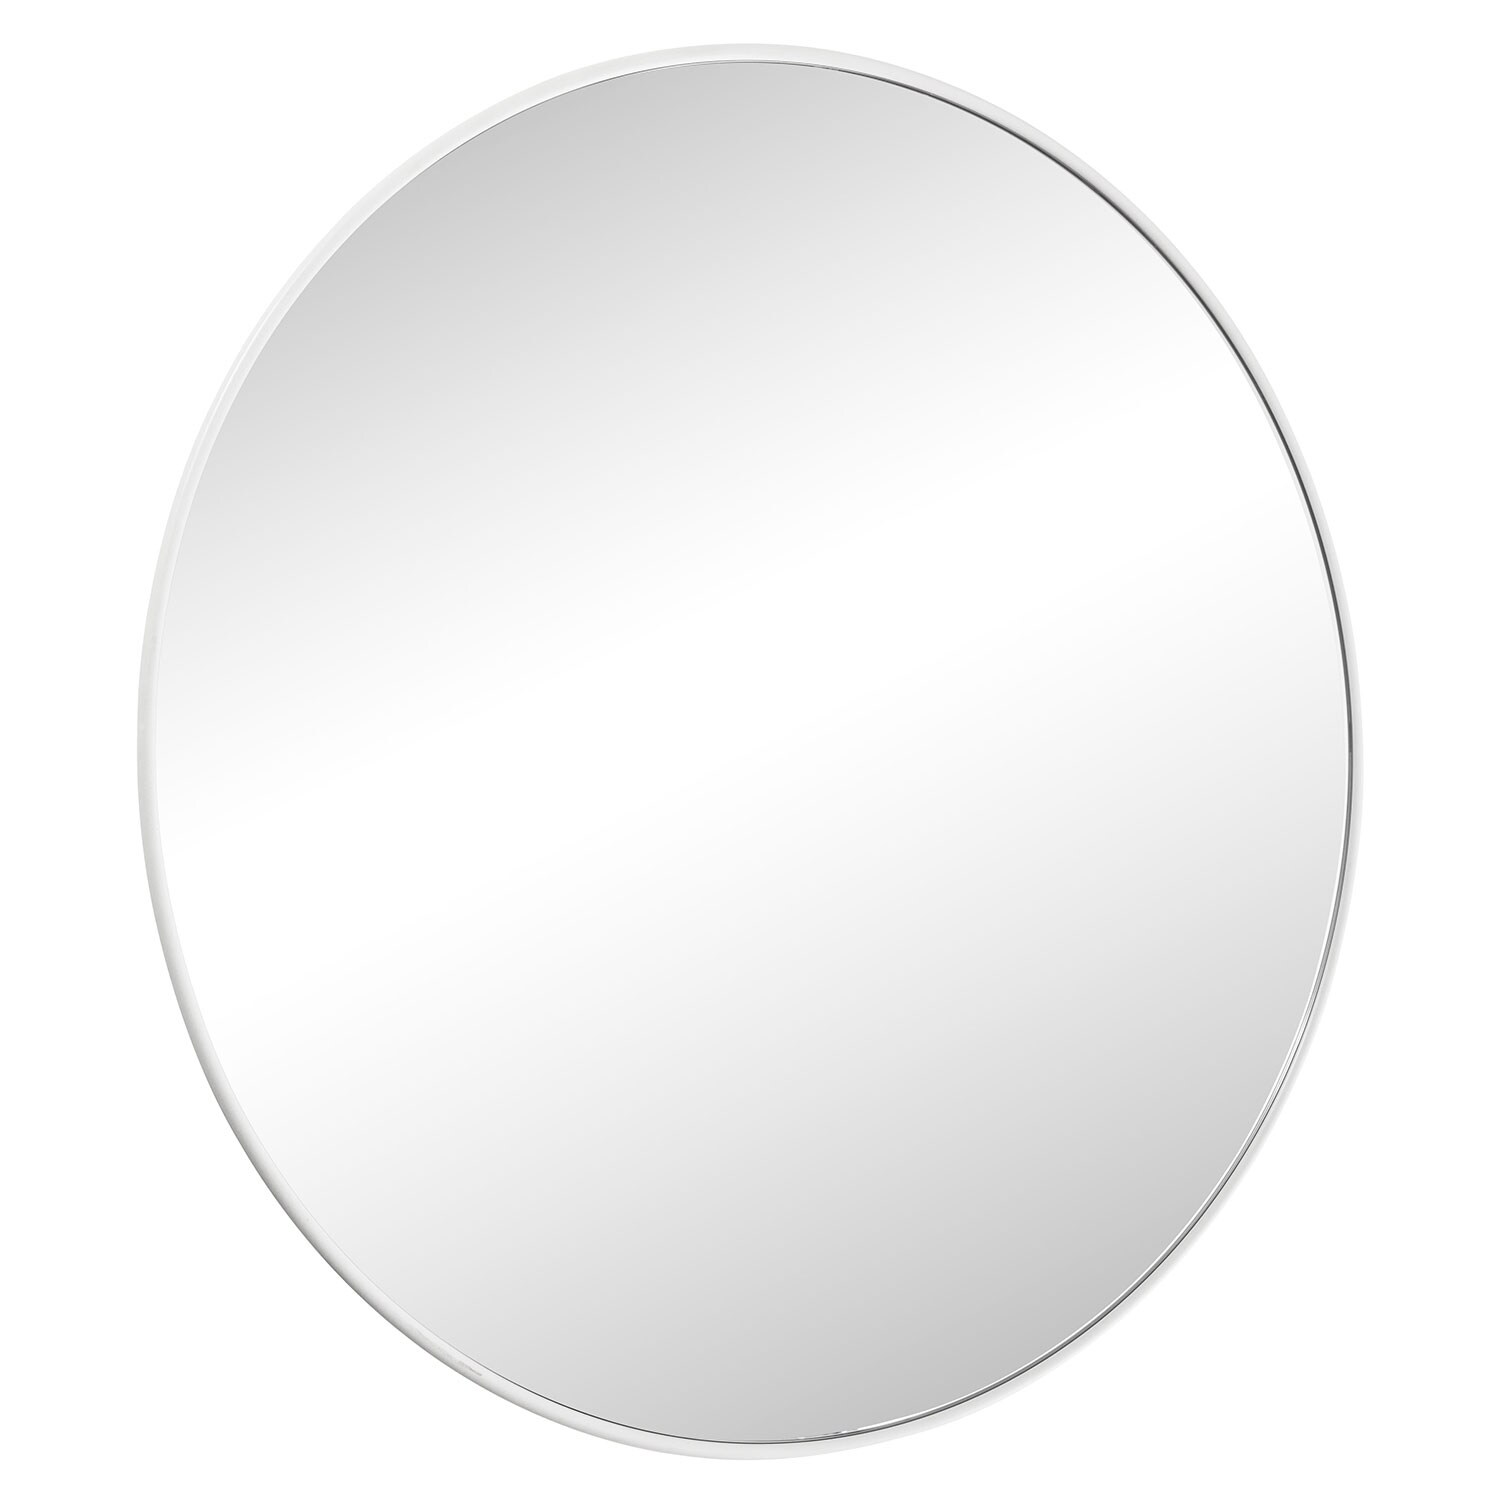 Smd Design Haga Basic Spegel 80 Cm - Väggspeglar Metall Vit